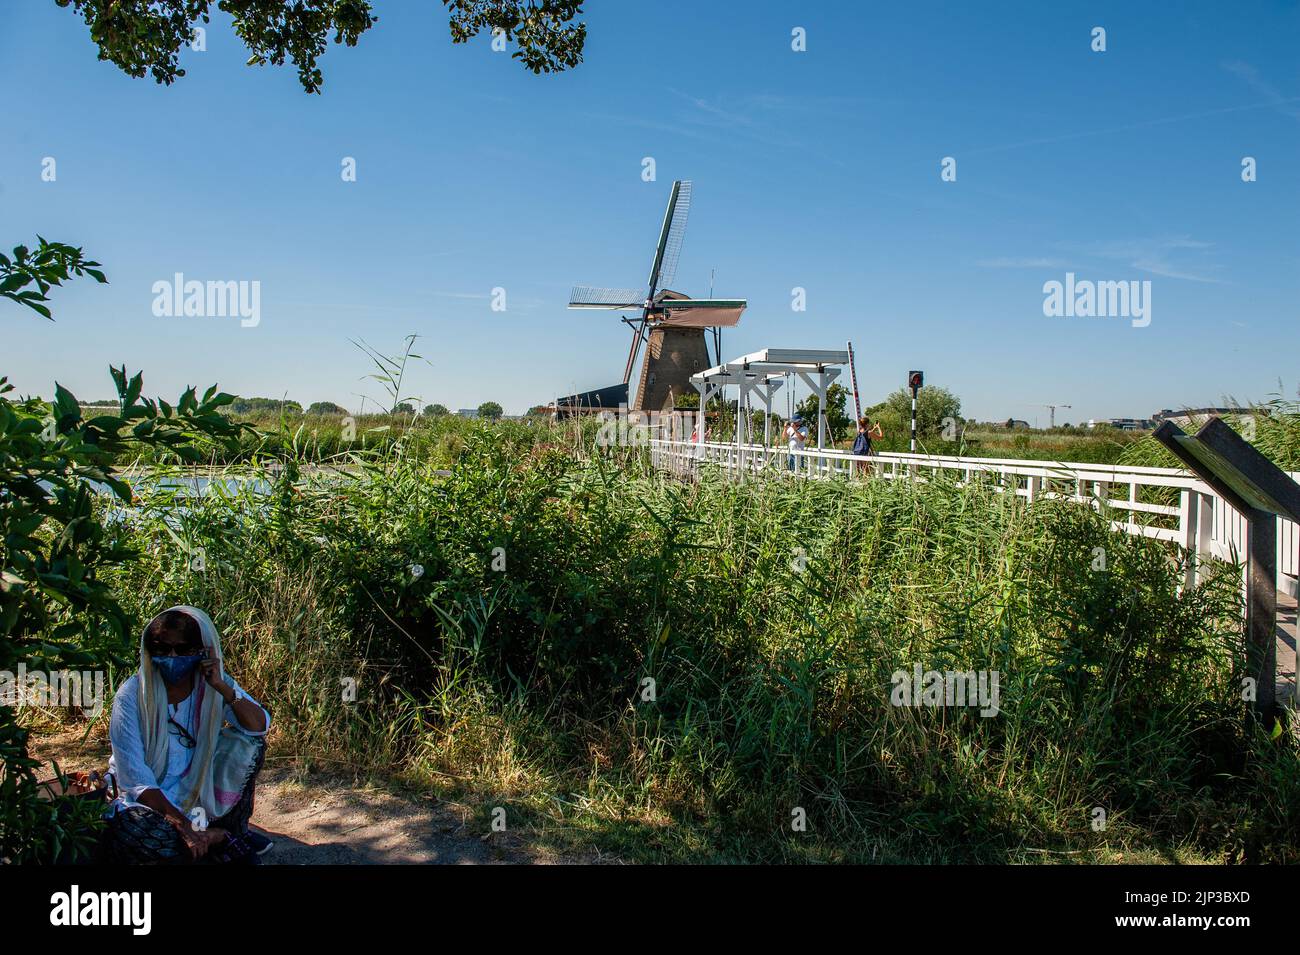 Kinderdijk, pays-Bas. 13th août 2022. Une femme indienne est vue prendre une pause lors de sa visite aux moulins à vent. Dans la belle région riche en eau près de Dordrecht, vous trouverez les moulins à vent de Kinderdijk. Construits vers 1740, ces 19 magnifiques moulins à vent font partie d'un plus grand système de gestion de l'eau pour éviter les inondations. Aujourd'hui, ils symbolisent la gestion de l'eau aux pays-Bas et, en 1997, ils ont été déclarés site du patrimoine mondial de l'UNESCO. Chaque année, des milliers de touristes du monde entier visitent ce lieu emblématique. Crédit : SOPA Images Limited/Alamy Live News Banque D'Images